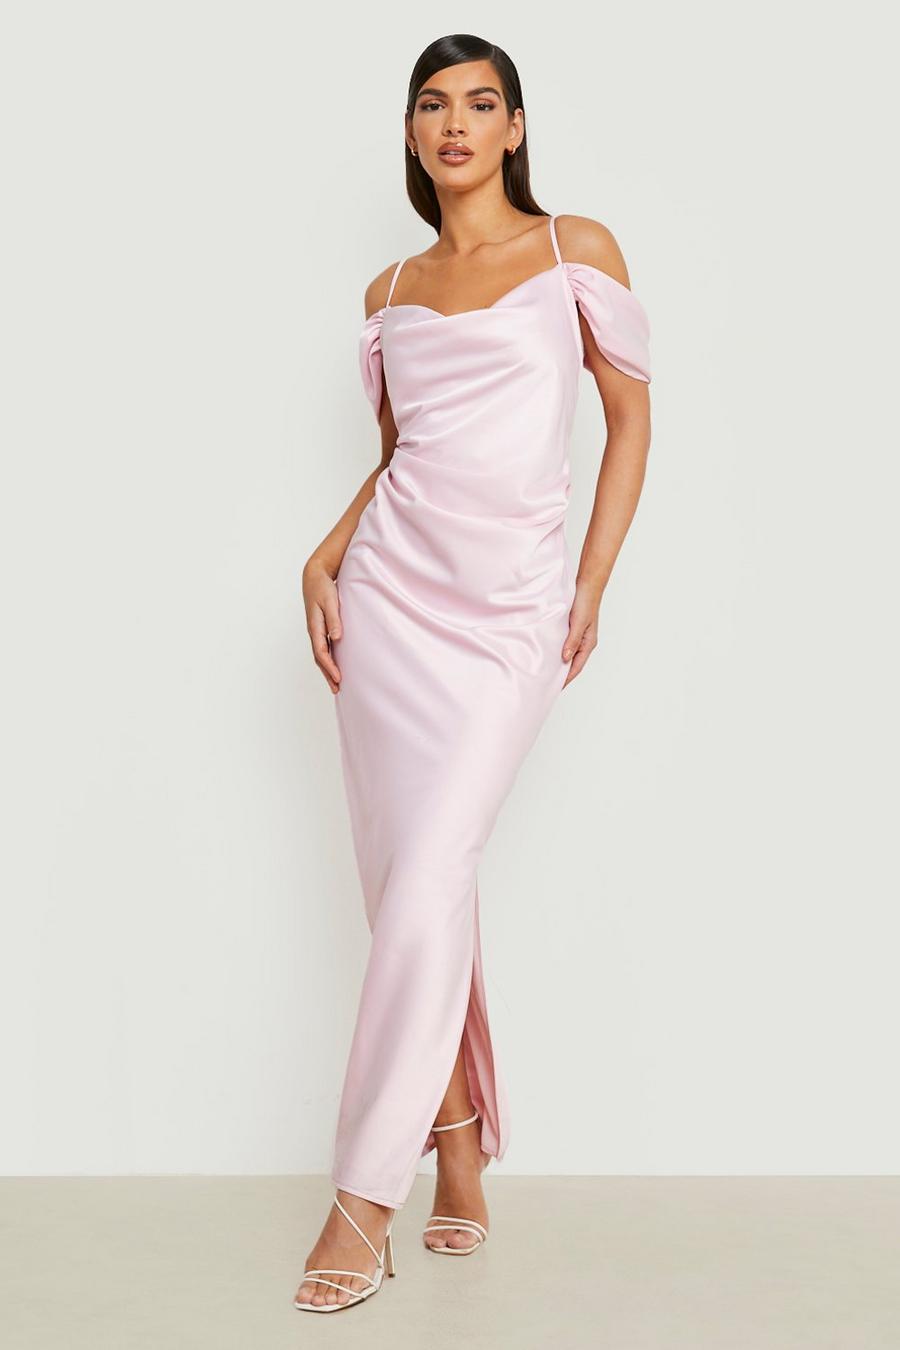 Dusty pink שמלת מקסי מסאטן עם כתפיים חשופות לשילוב והתאמה